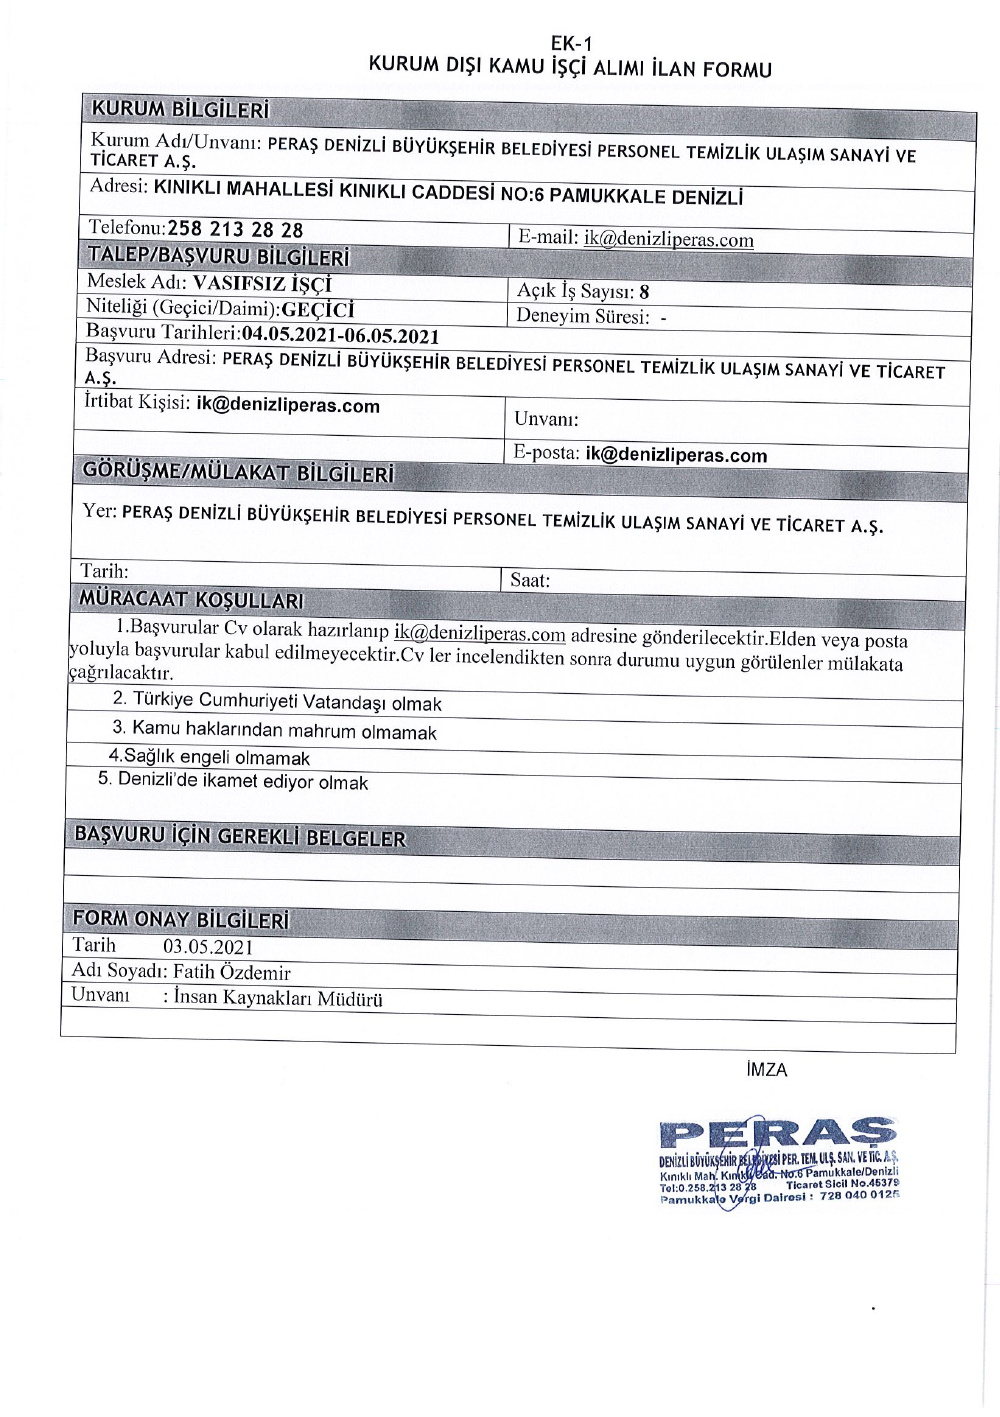 denizli-peras-tic-a-s-06-05-2021-000001.png